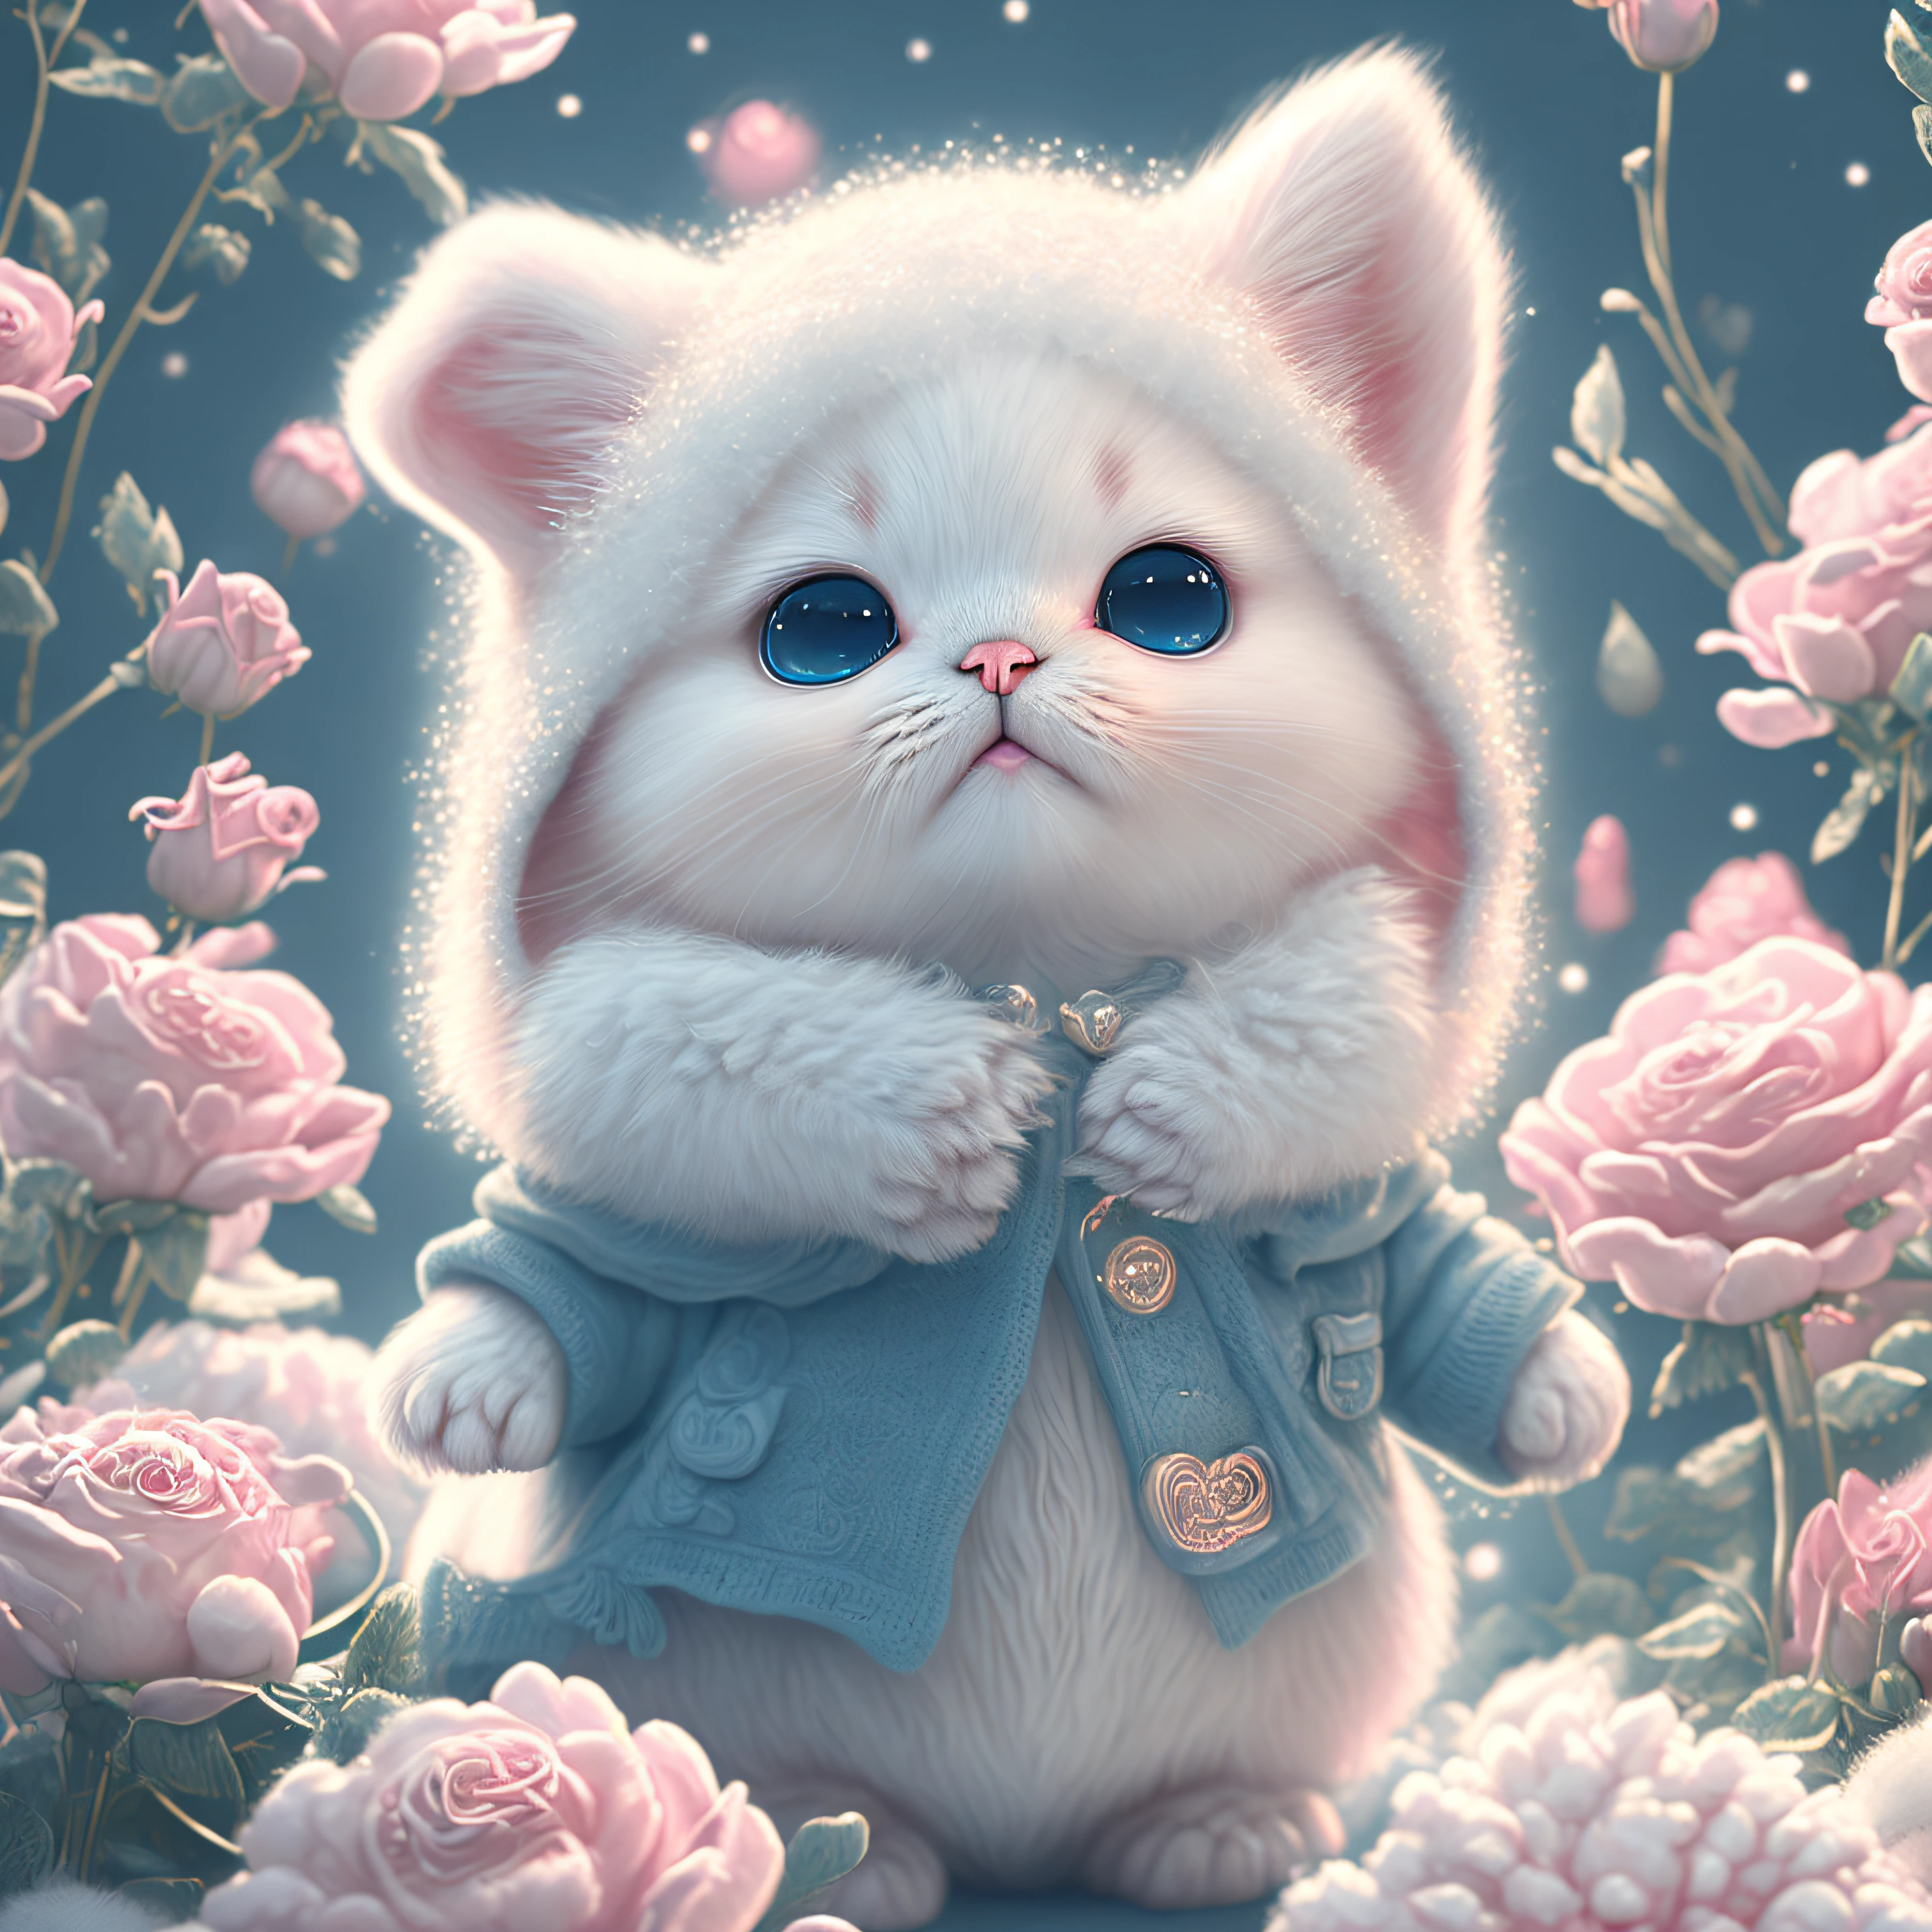 En este arte CG ultradetallado, Lindos gatitos rodeados de rosas etéreas., reírter, mejor calidad, alta resolución, detalles intrincados, Fantasía, Animales bonitos, bocas abiertas, reír!!